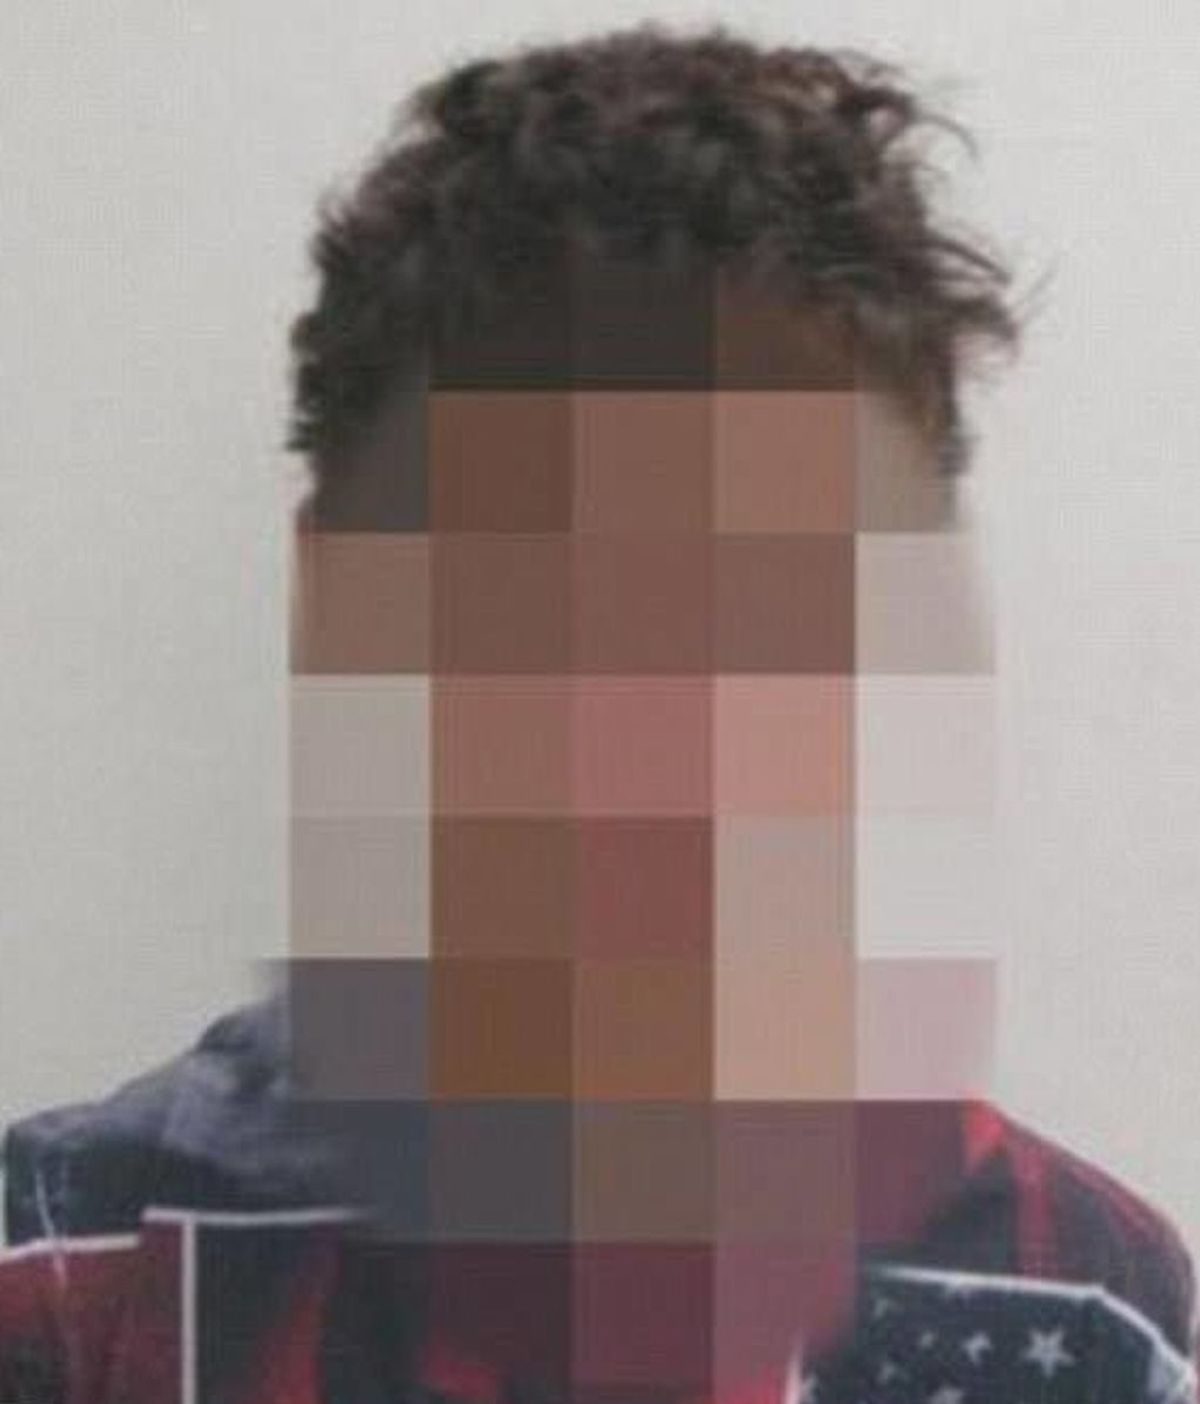 Un joven de 15 años admite haber violado repetidamente y robado a una mujer de 85 en Australia